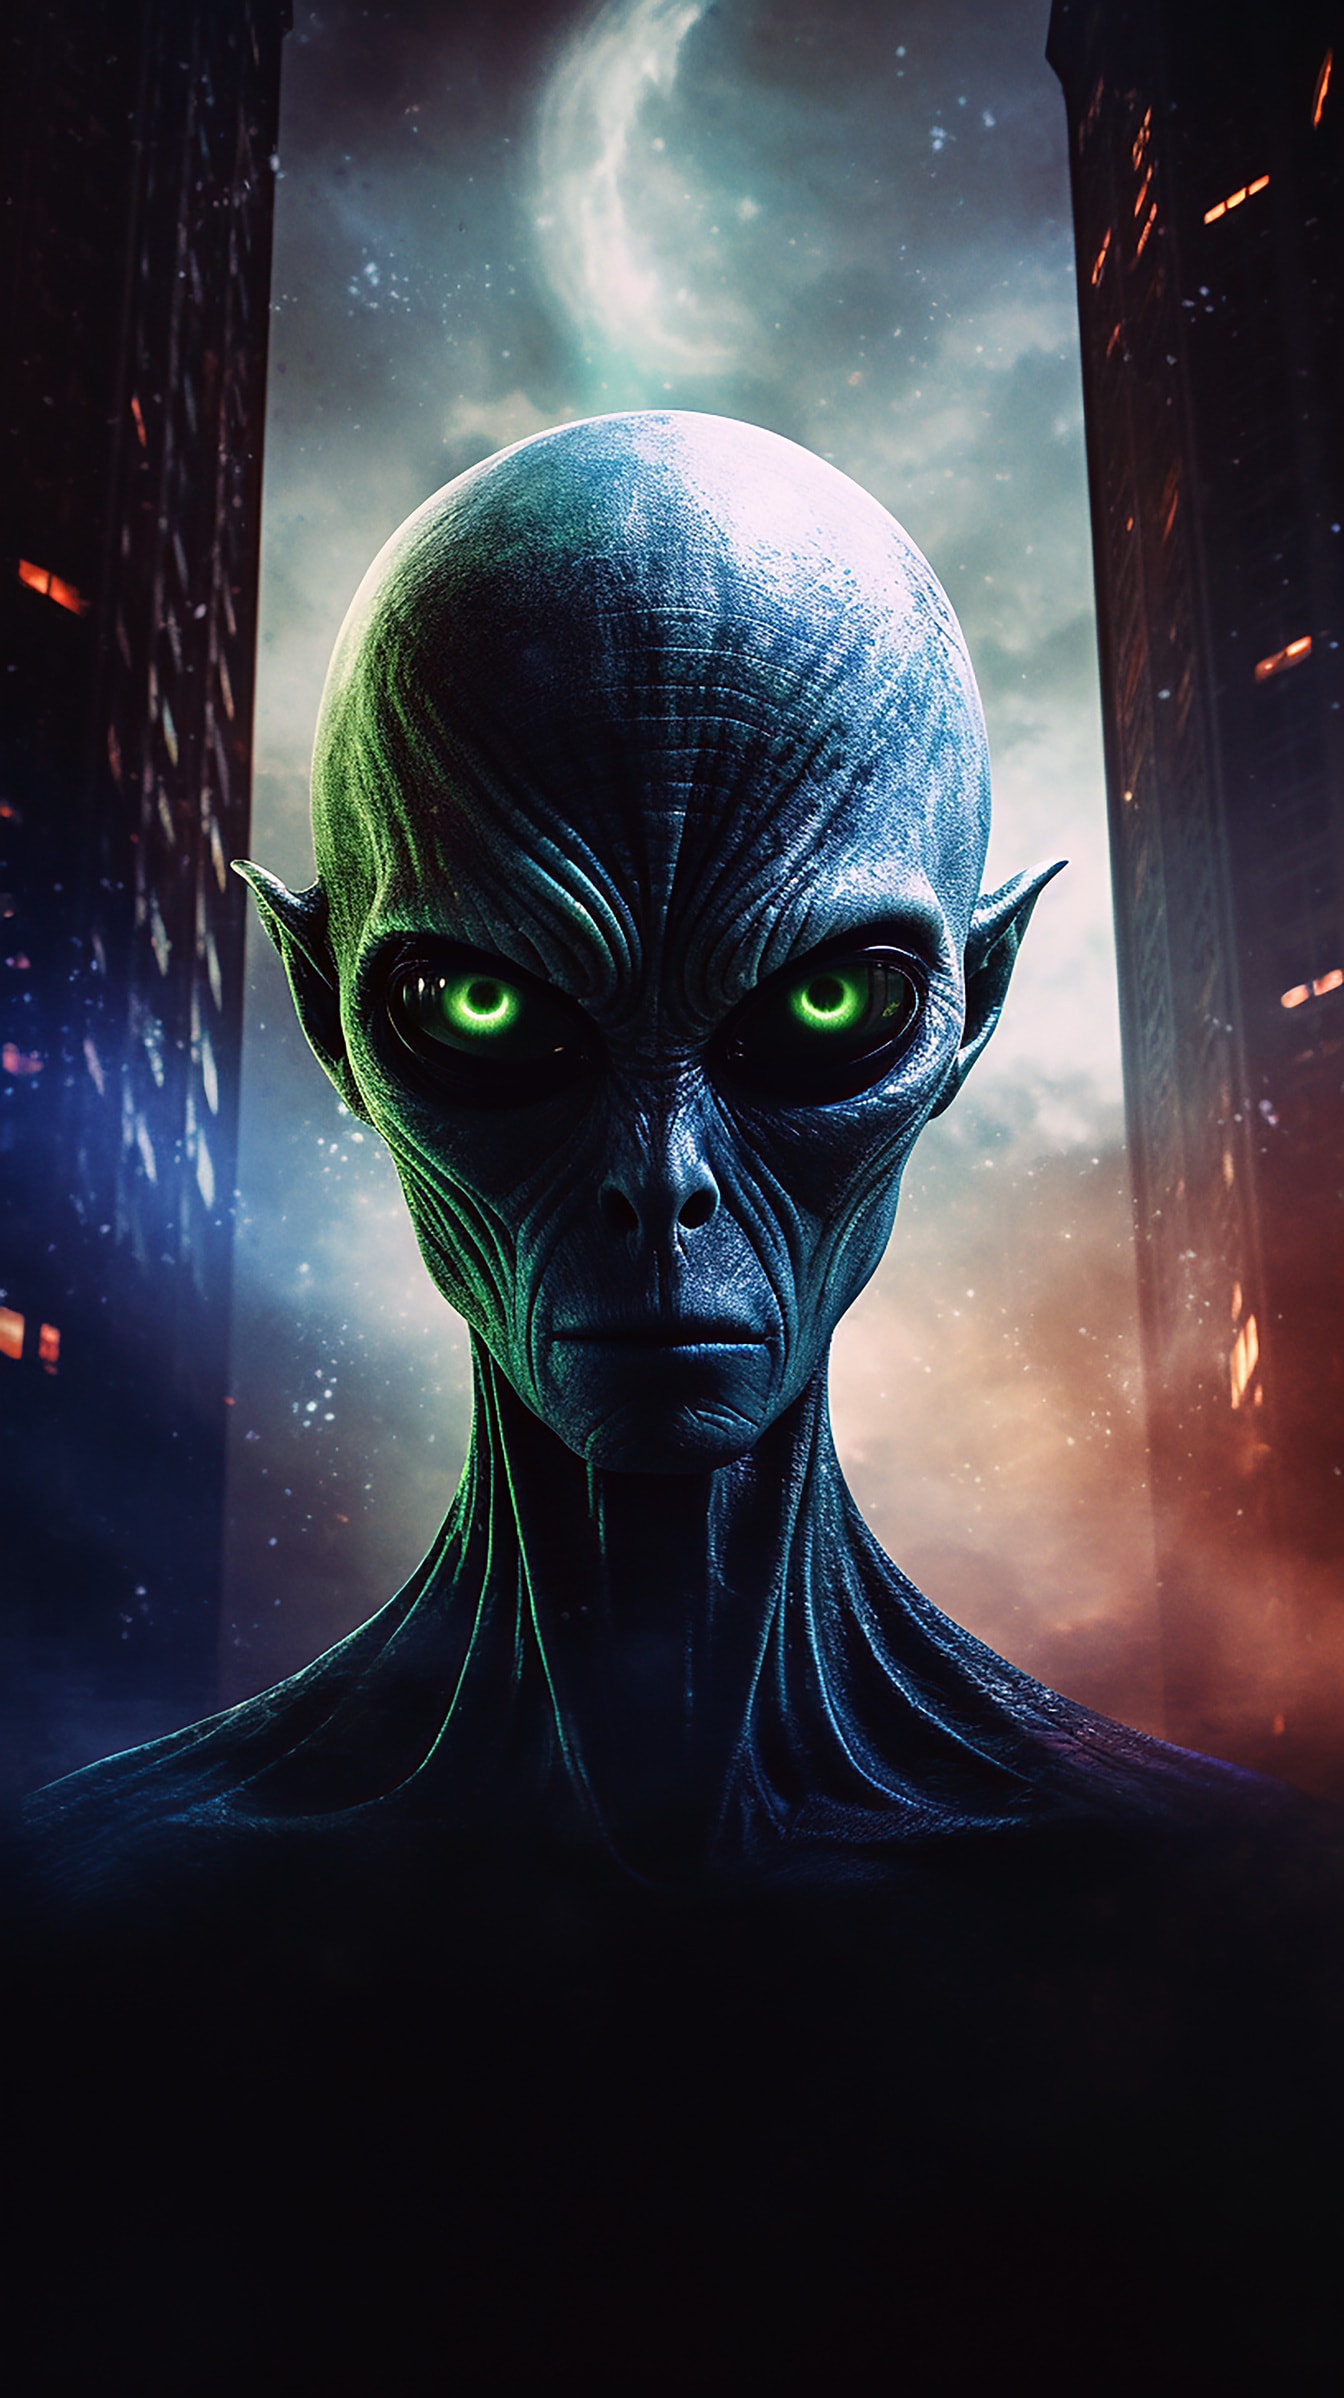 Portrét mimozemského tvora s tmavě zelenýma očima